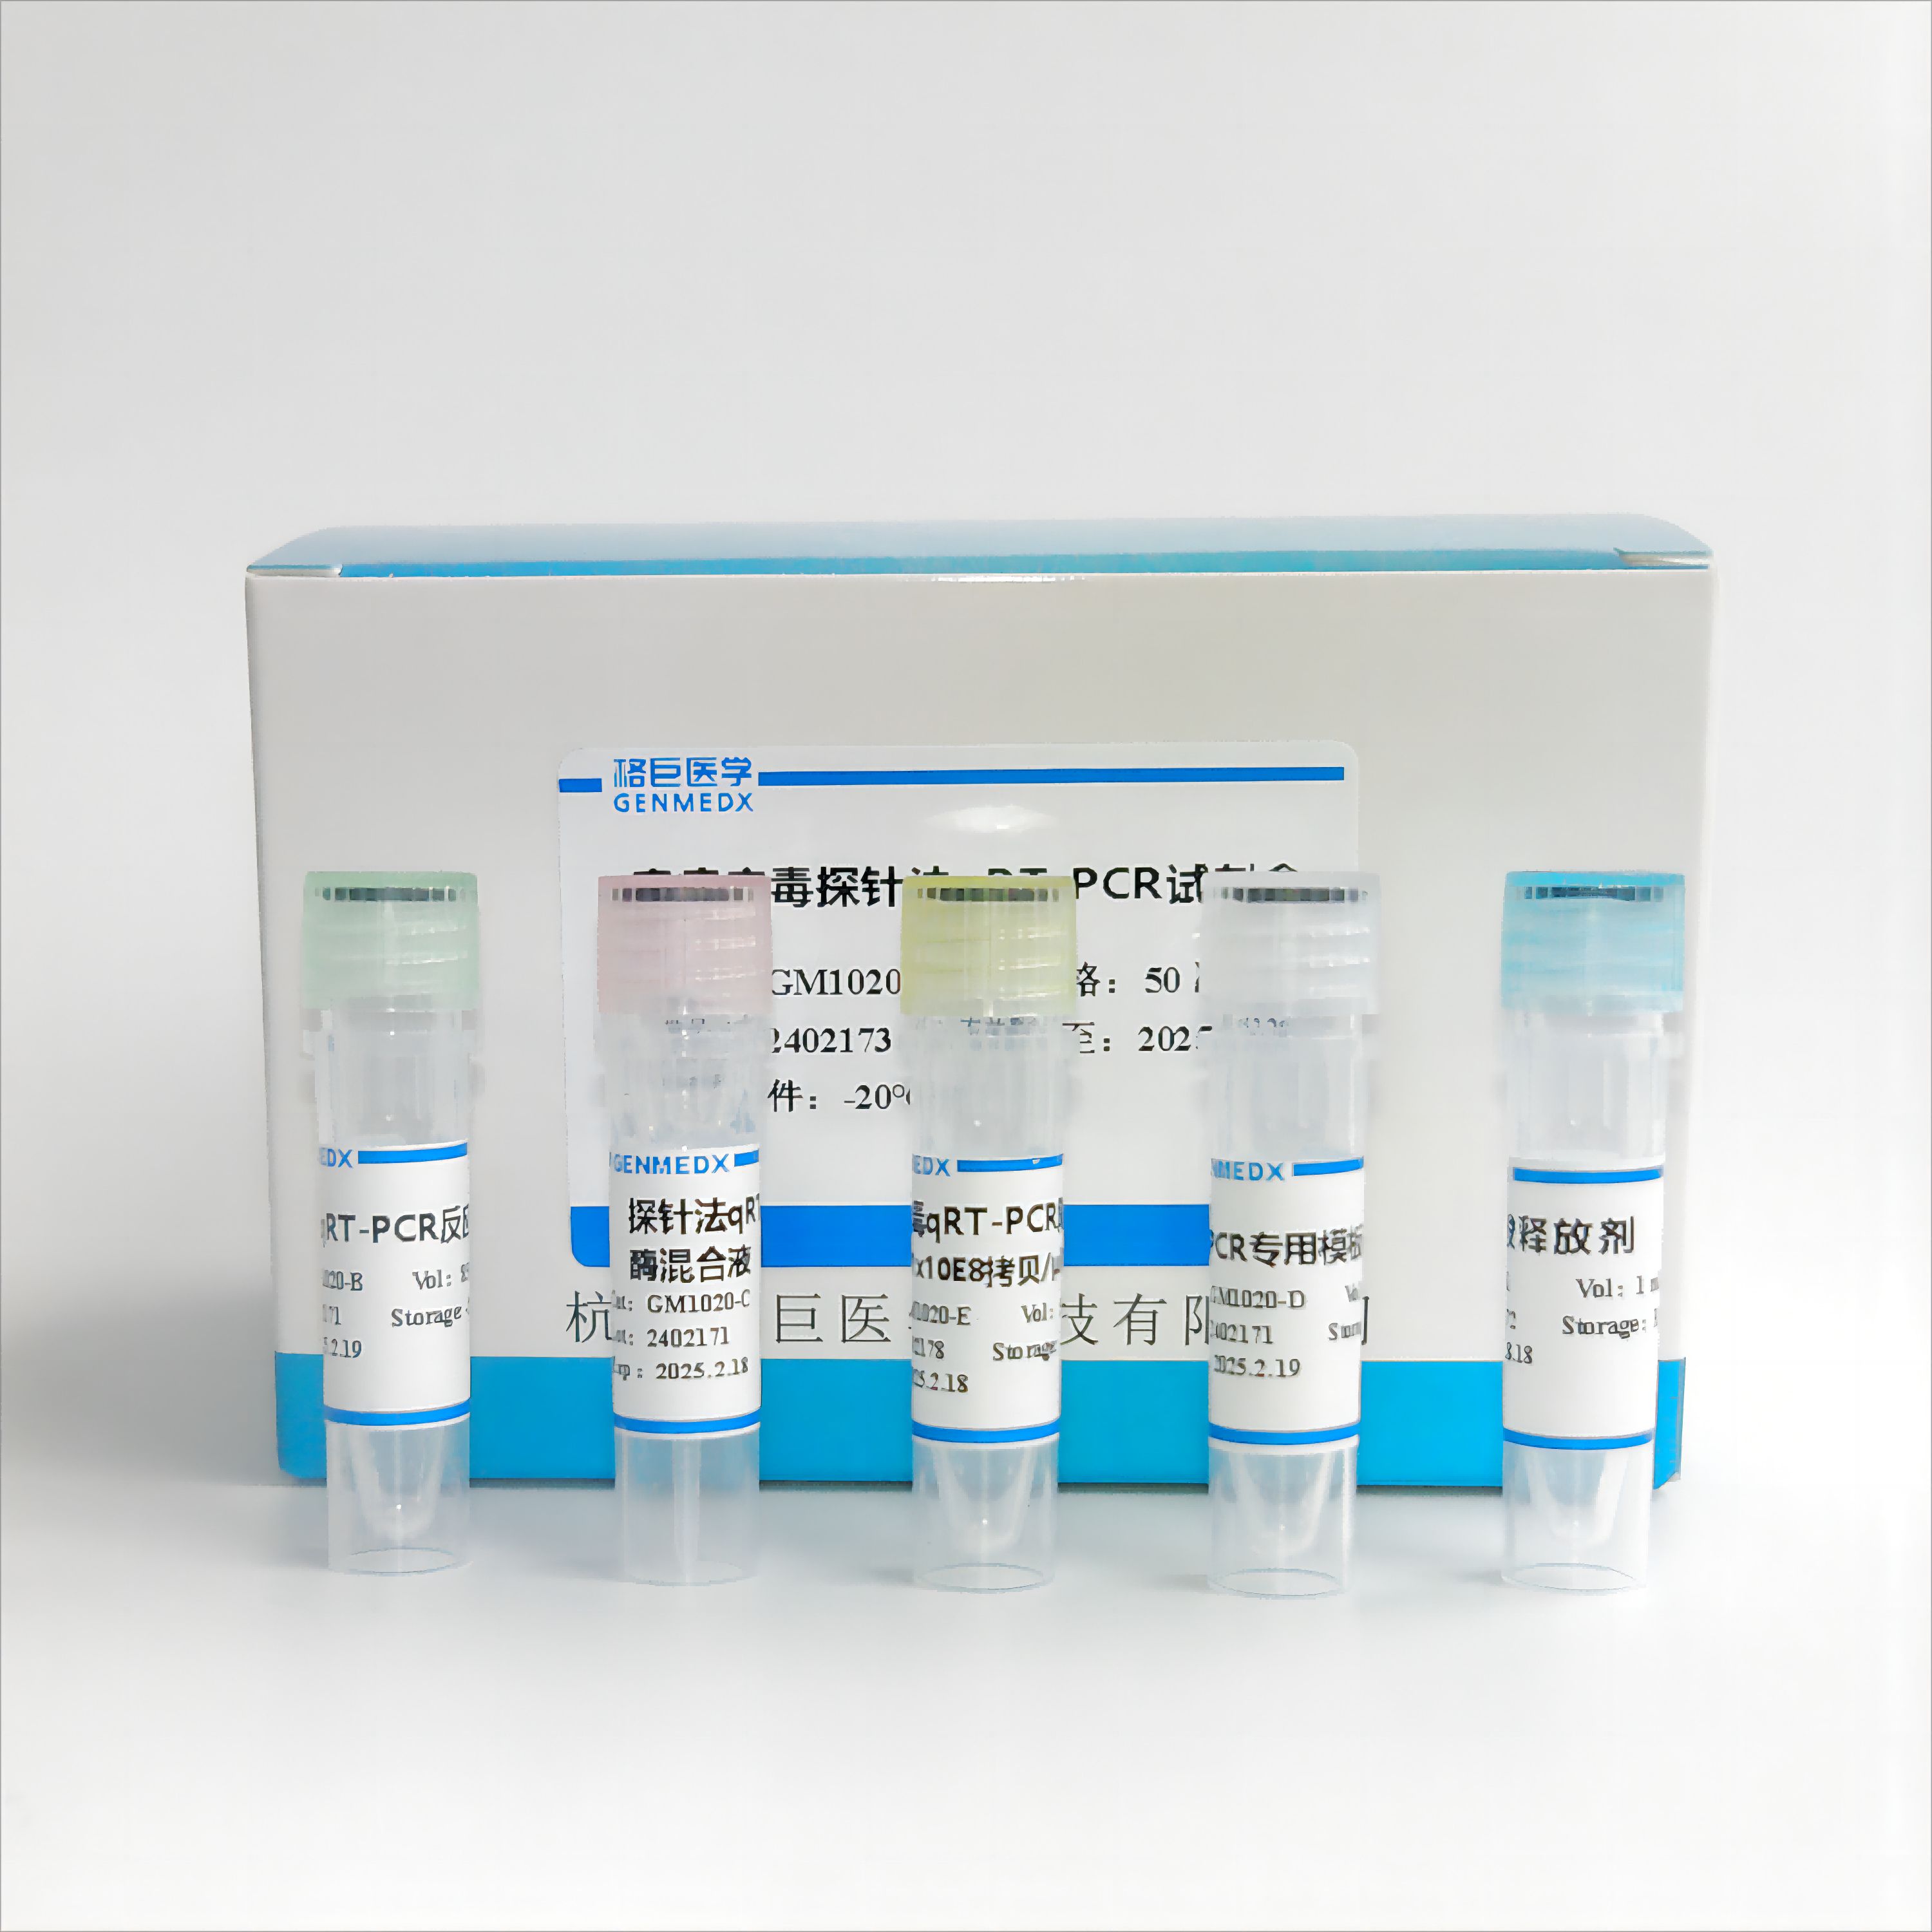 牛病毒性腹泻病毒(BVDV)探针法荧光定量RT-PCR试剂盒